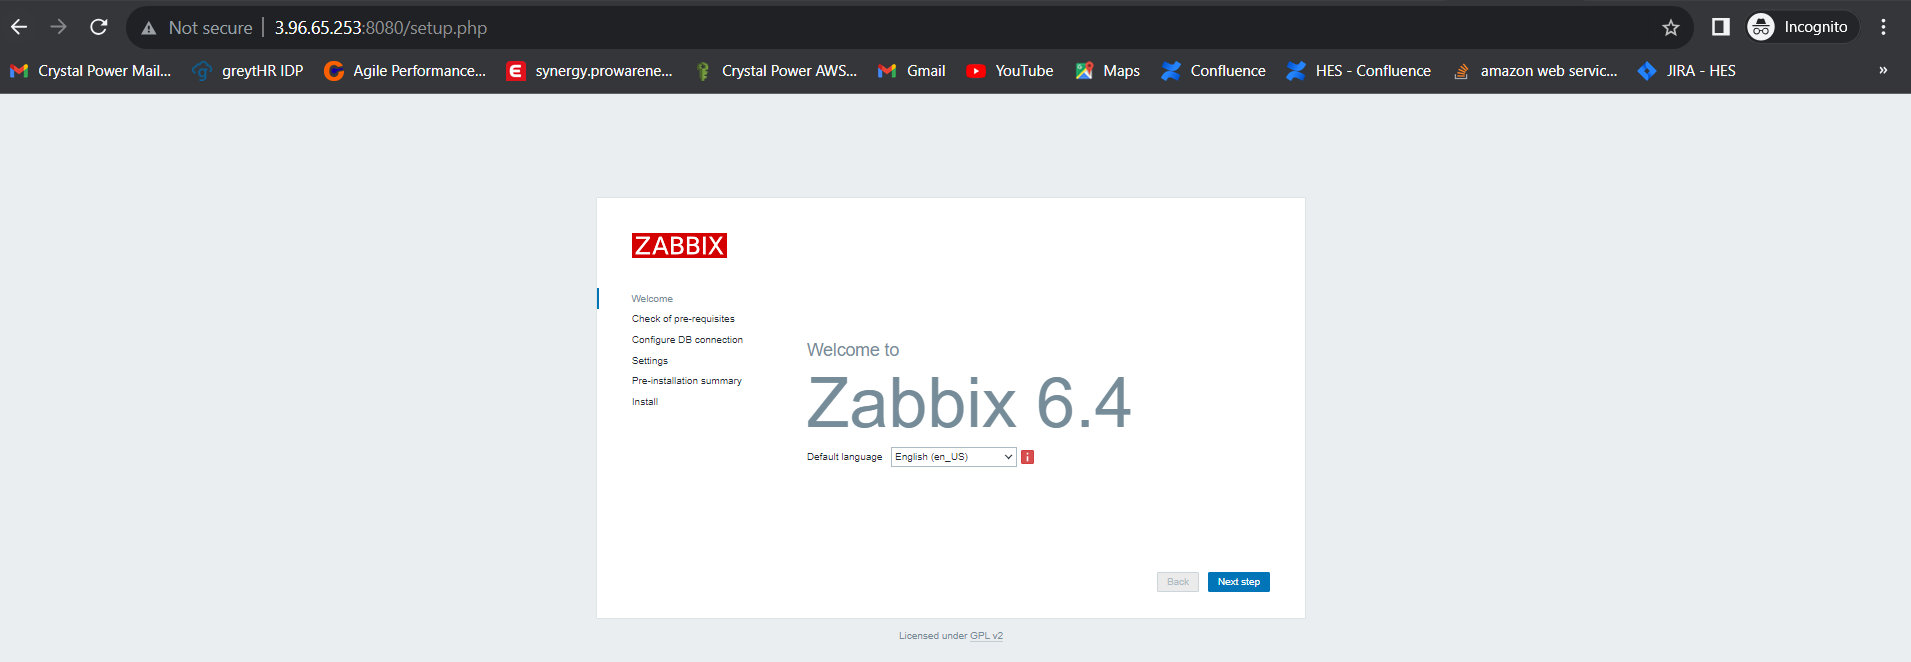 Zabbix documentation